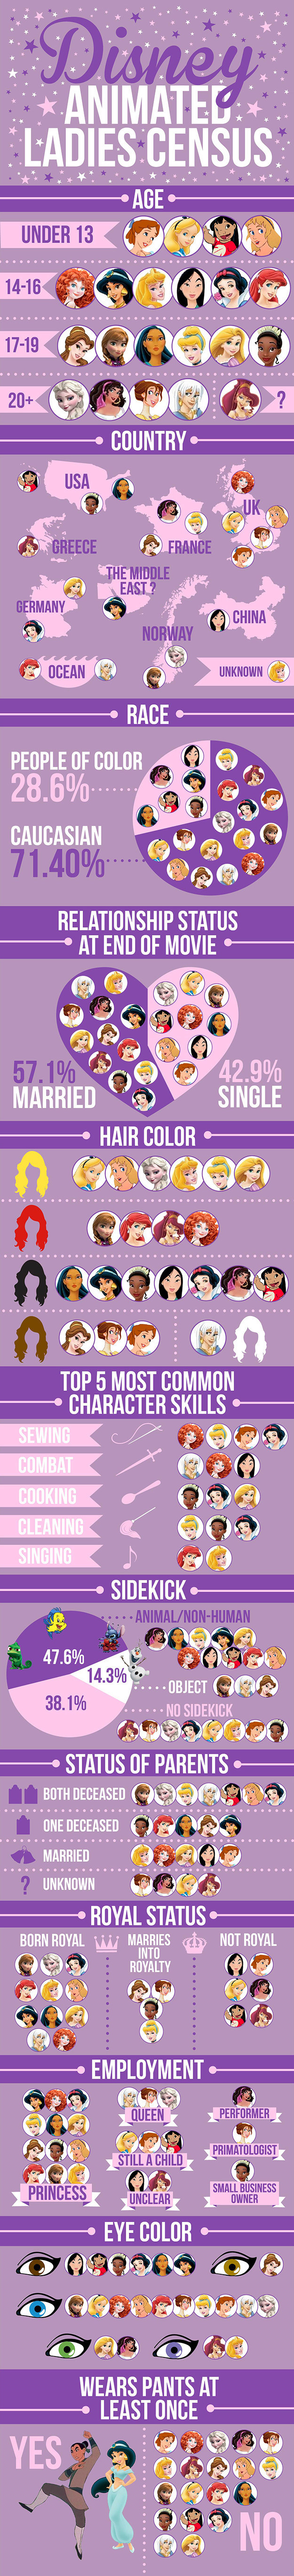 Disney Animated Ladies Census